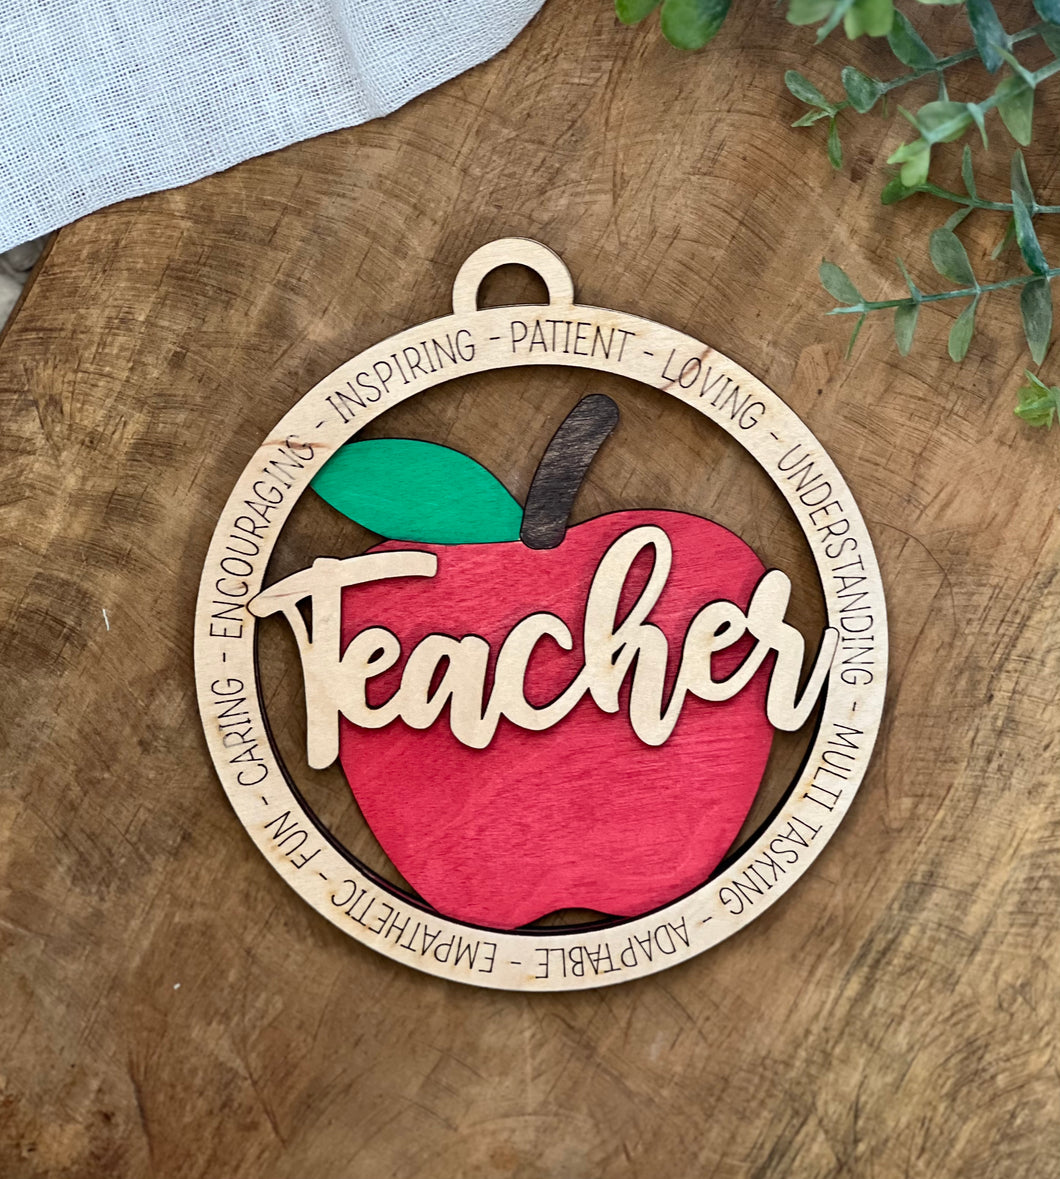 Teacher Car Charm/Ornament